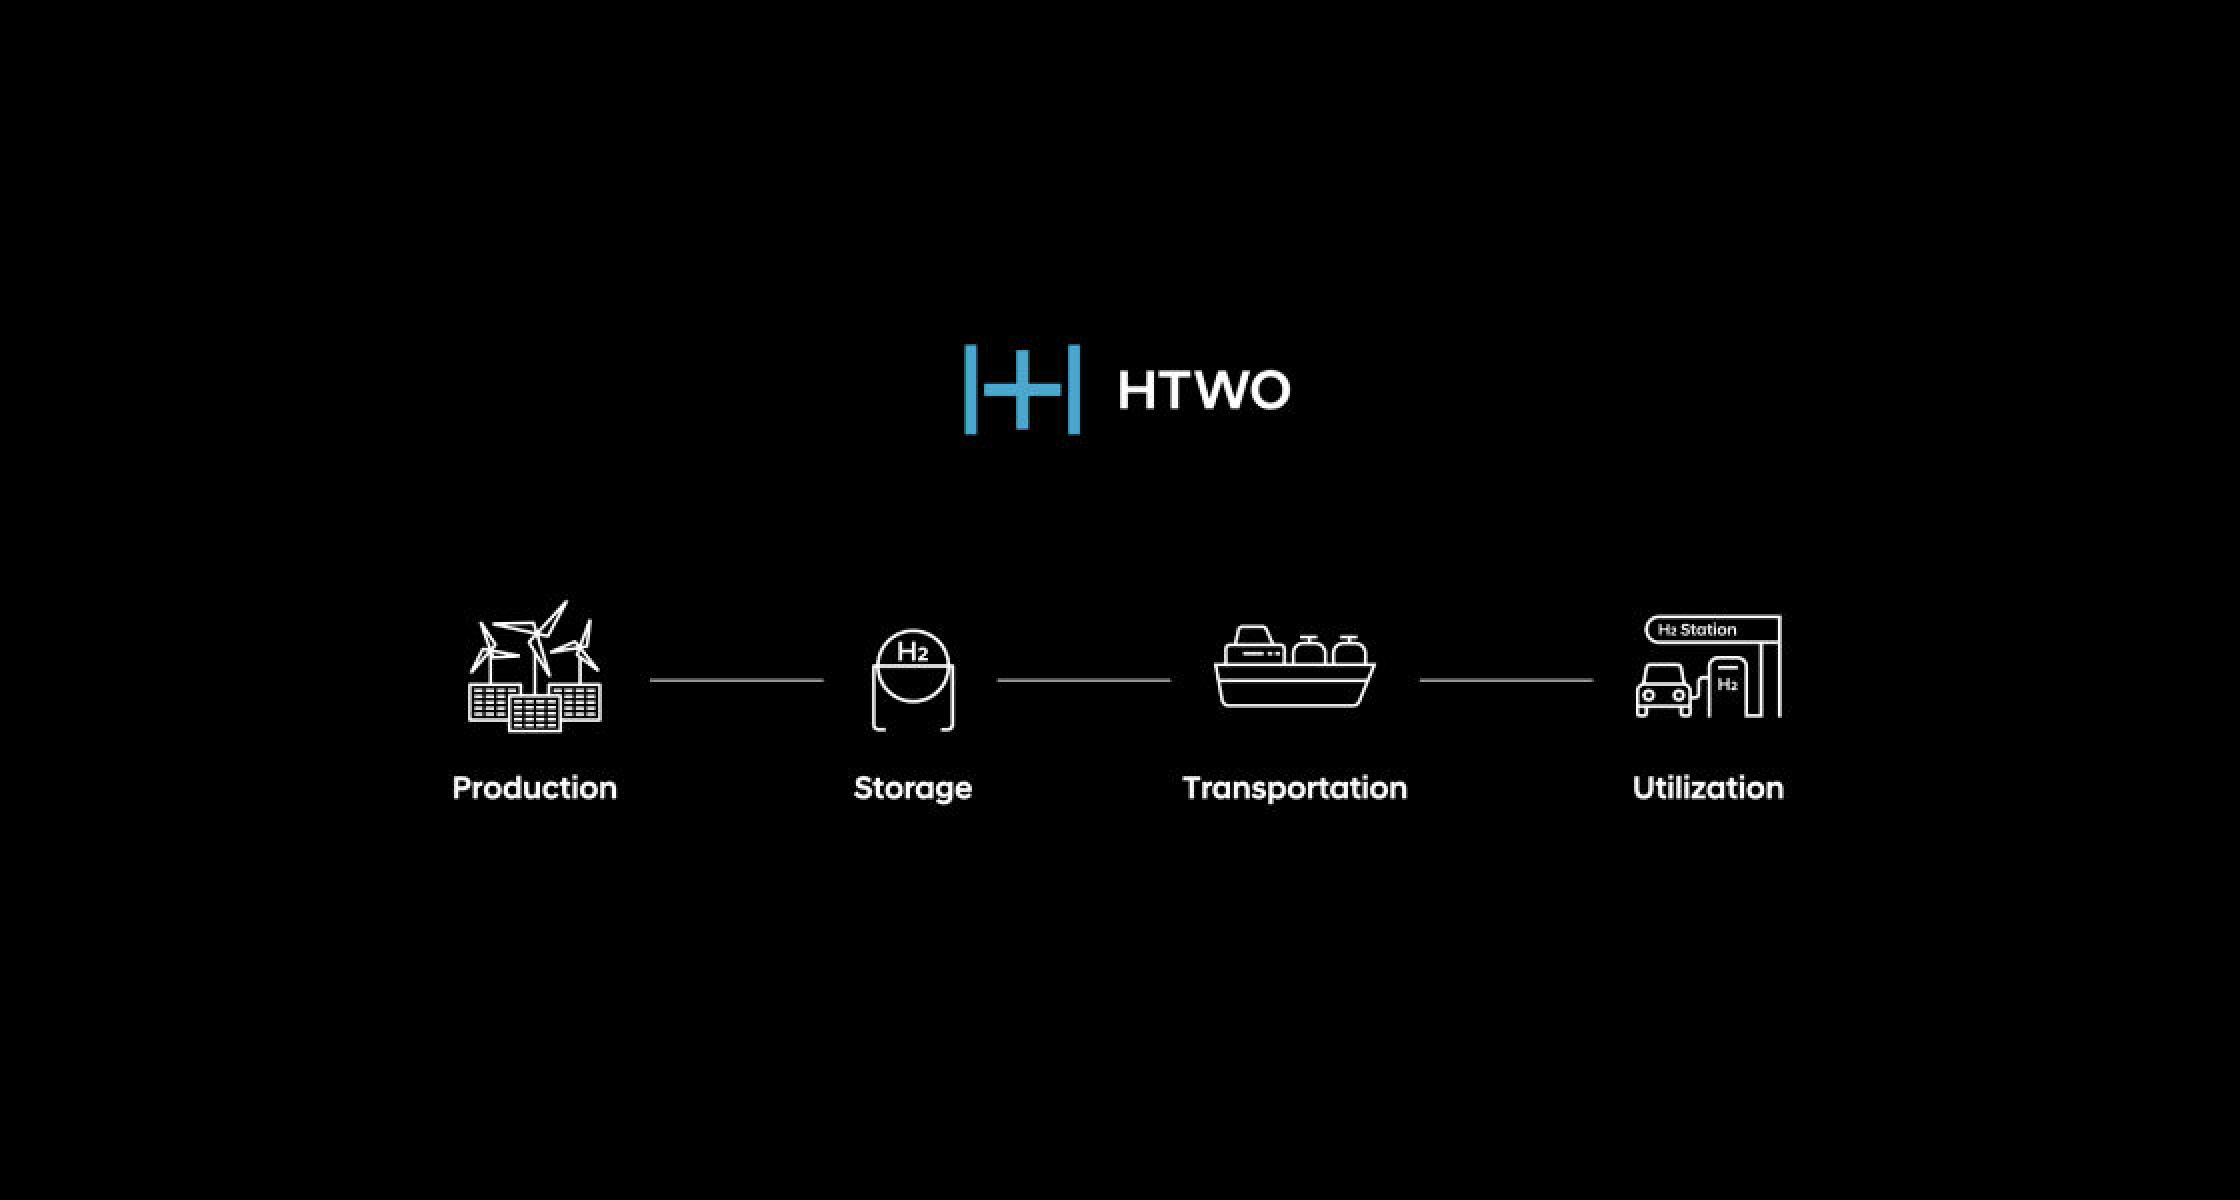 HyundaiのHTWOバリューチェーンを示すピクトグラフです。 左側から生産工場、運送、保存、活用という4つの項目が順に並んでいて、各項目は直線でつながっています。  -  ヒョンデモビリティジャパン ブランドストーリー